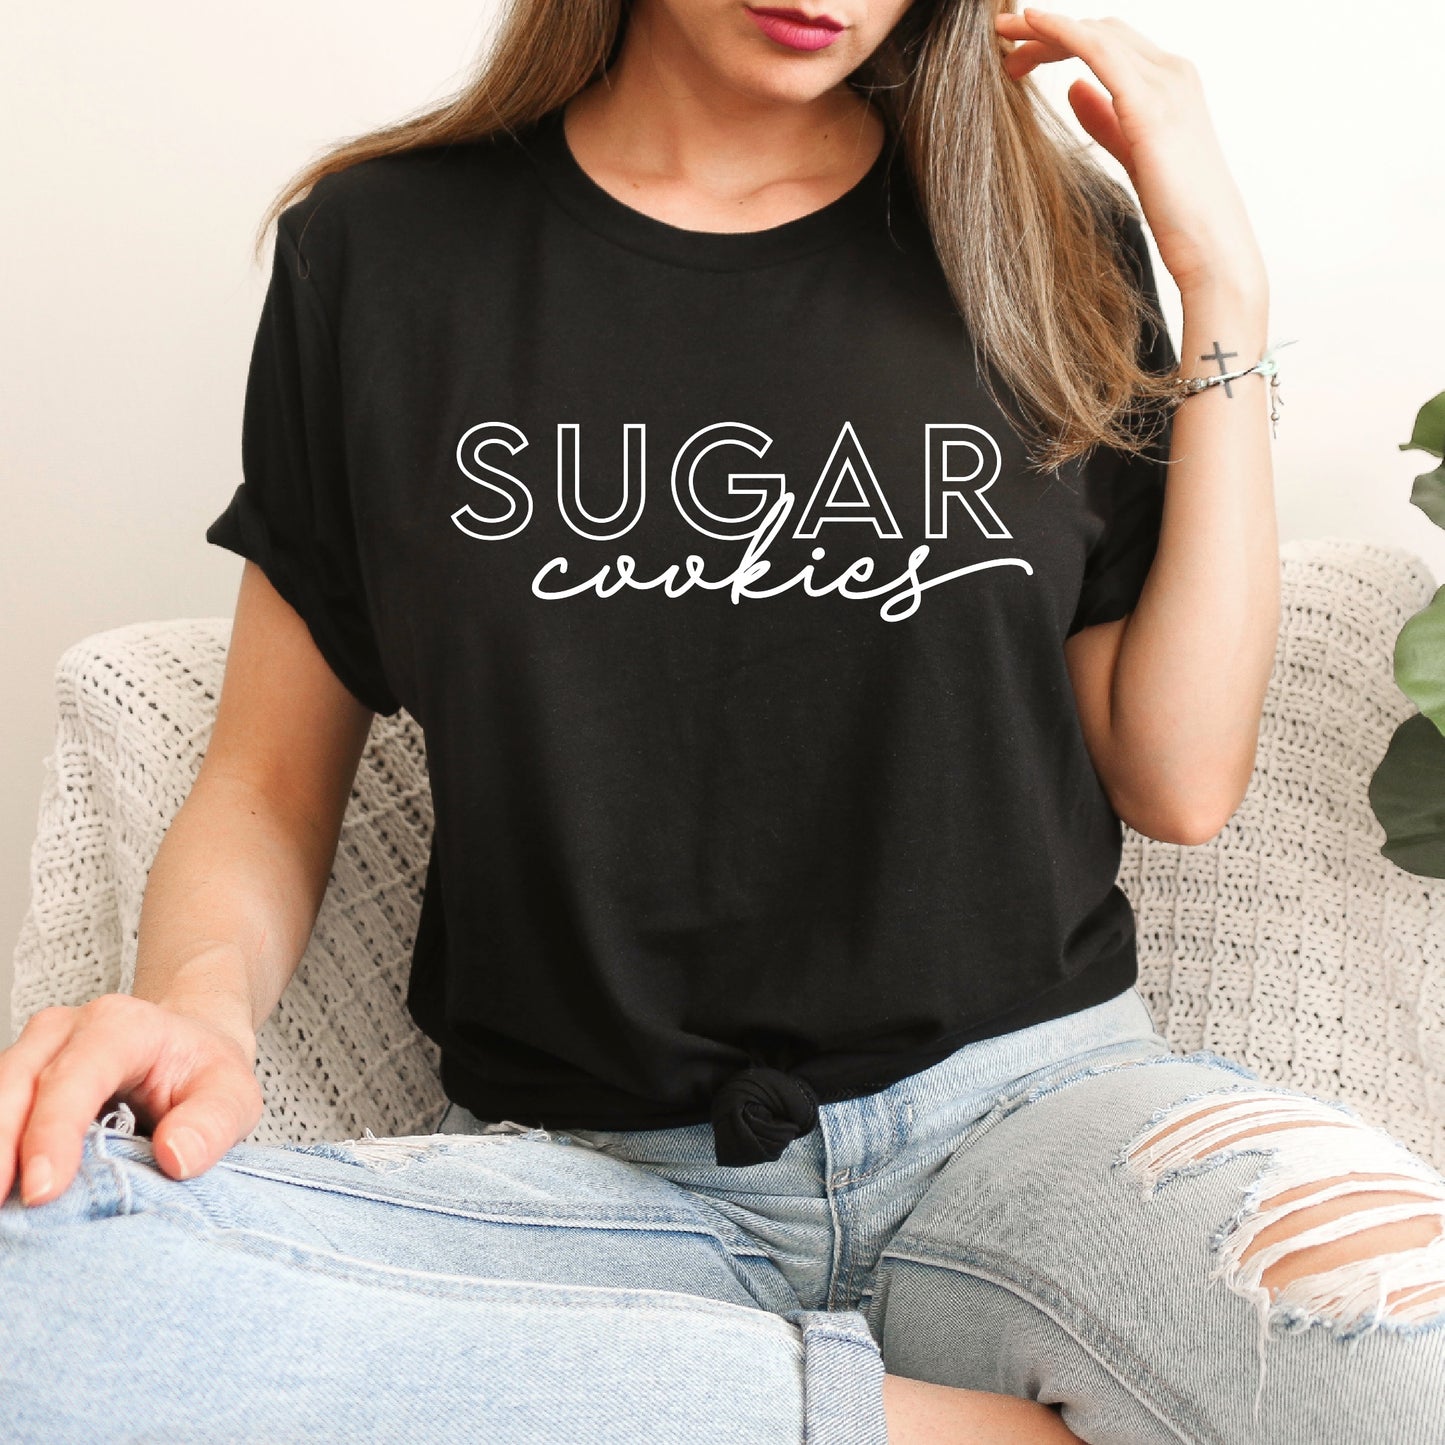 Sugar Cookies - Unisex Tee